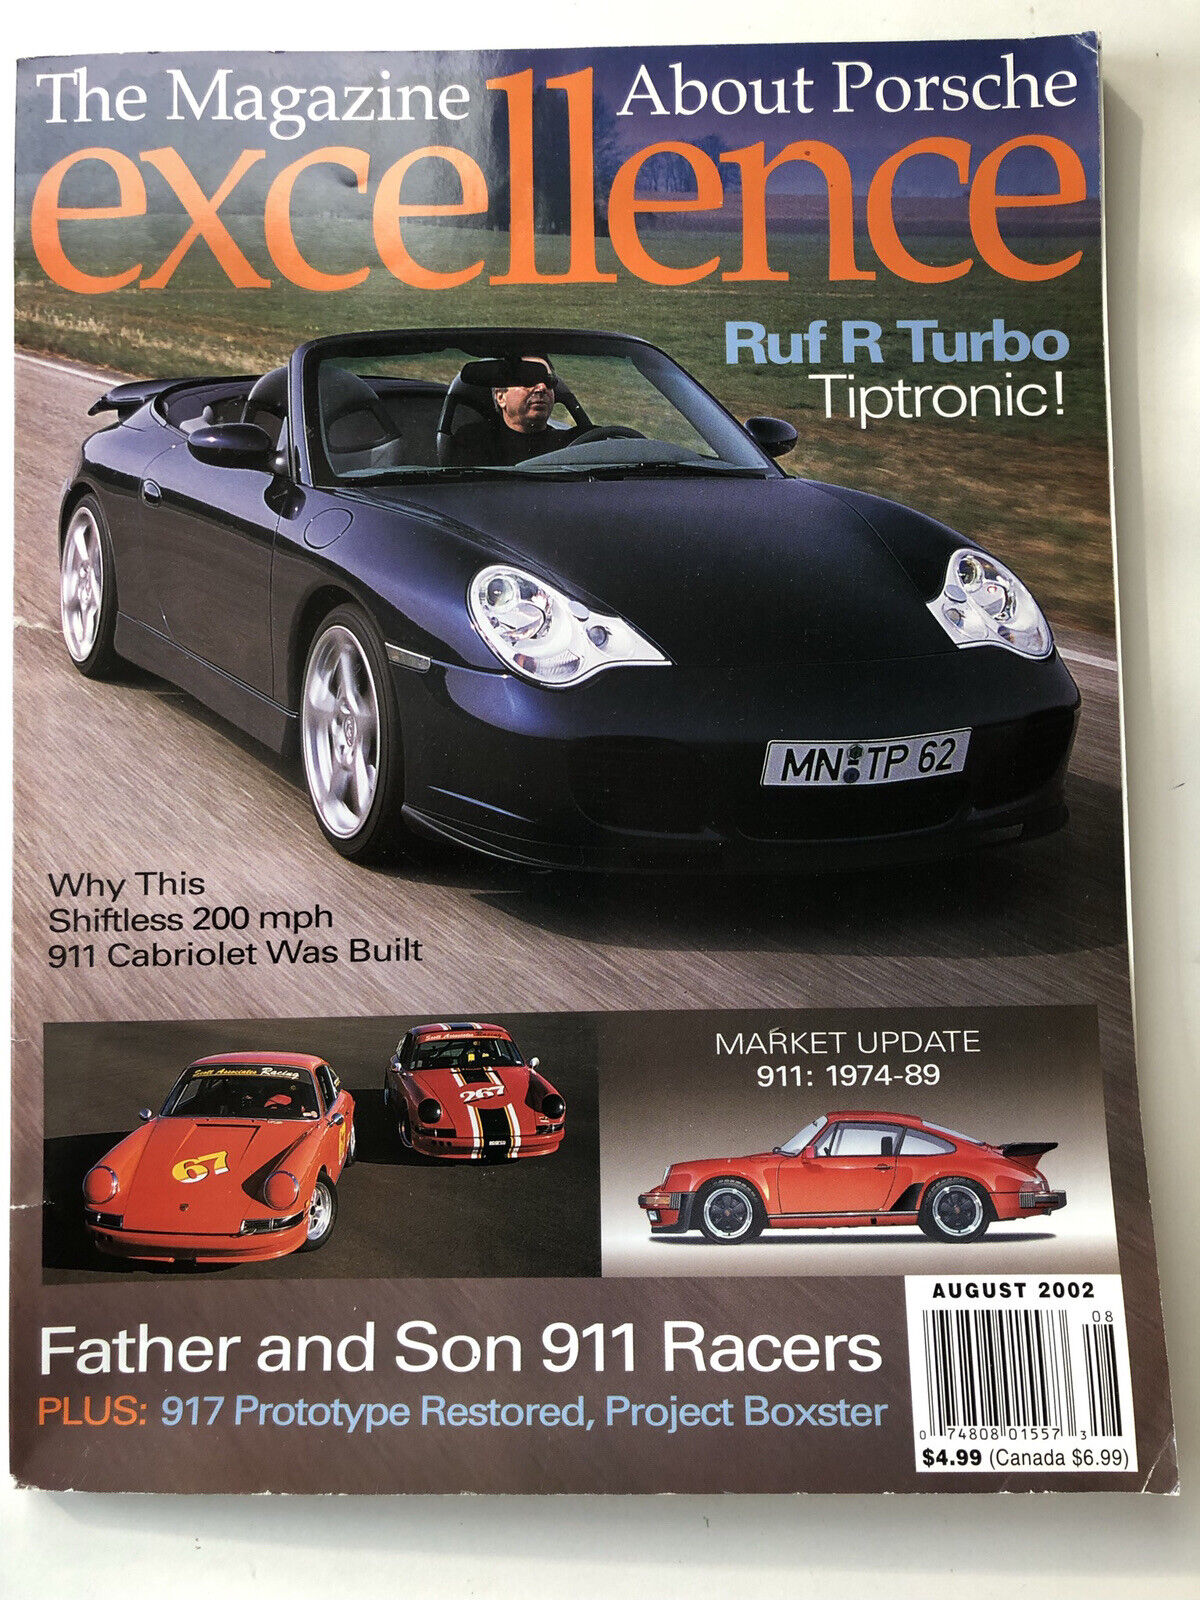 Excellence magazine Porsche, August 2002, Ruf R Turbo